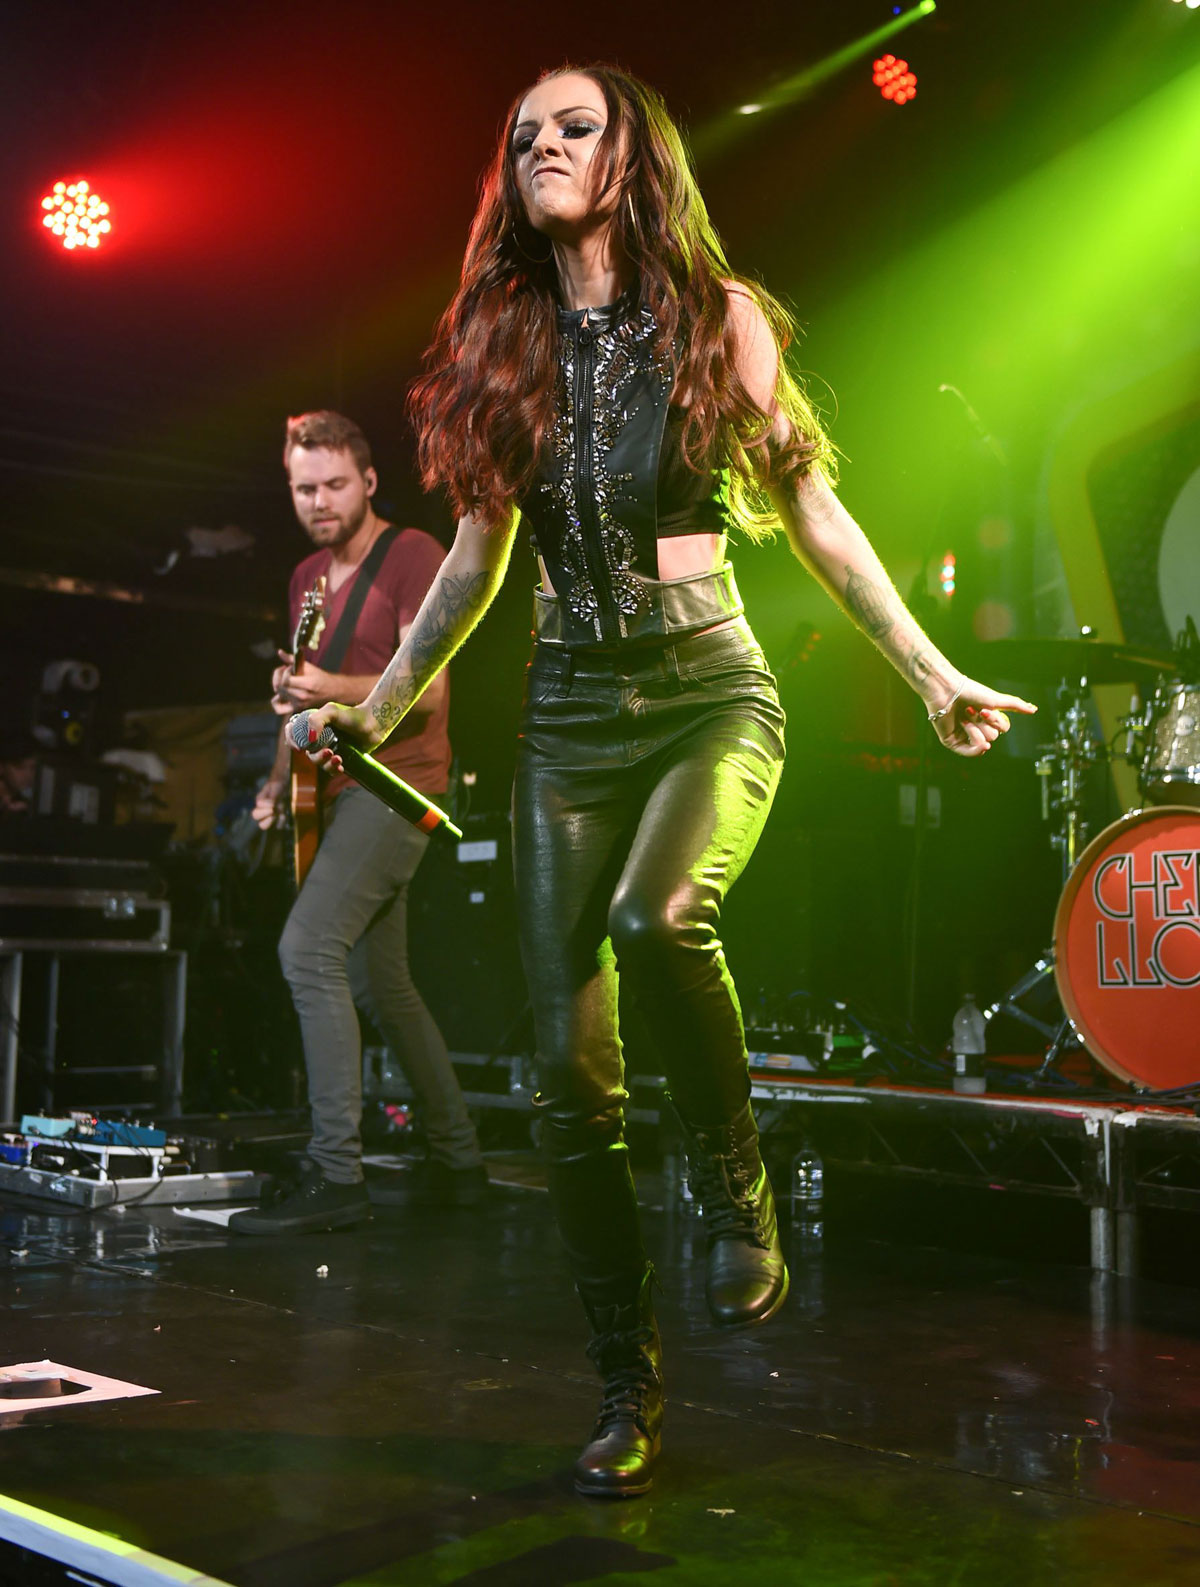 Cher Lloyd performing at G-A-Y Nightclub